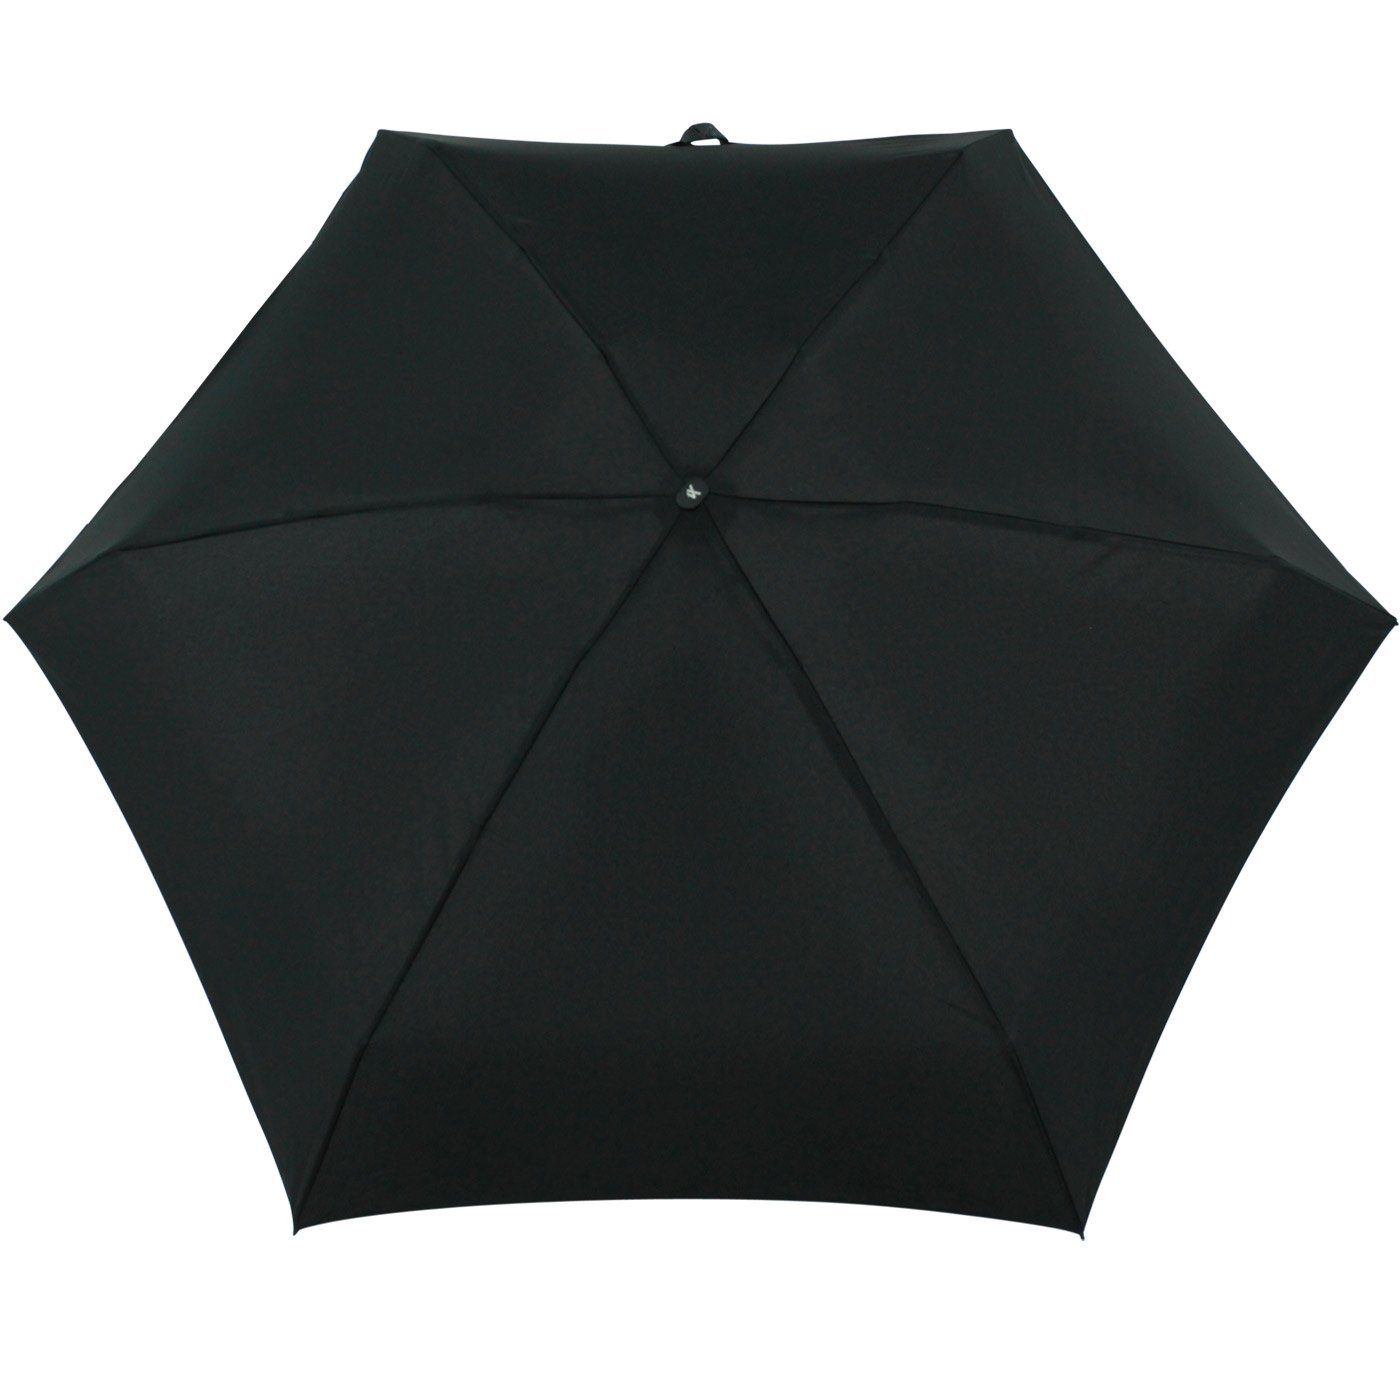 schwarz 15 Format, iX-brella ultra-klein Ultra cm Taschenregenschirm Handy Schirm winziger im Mini